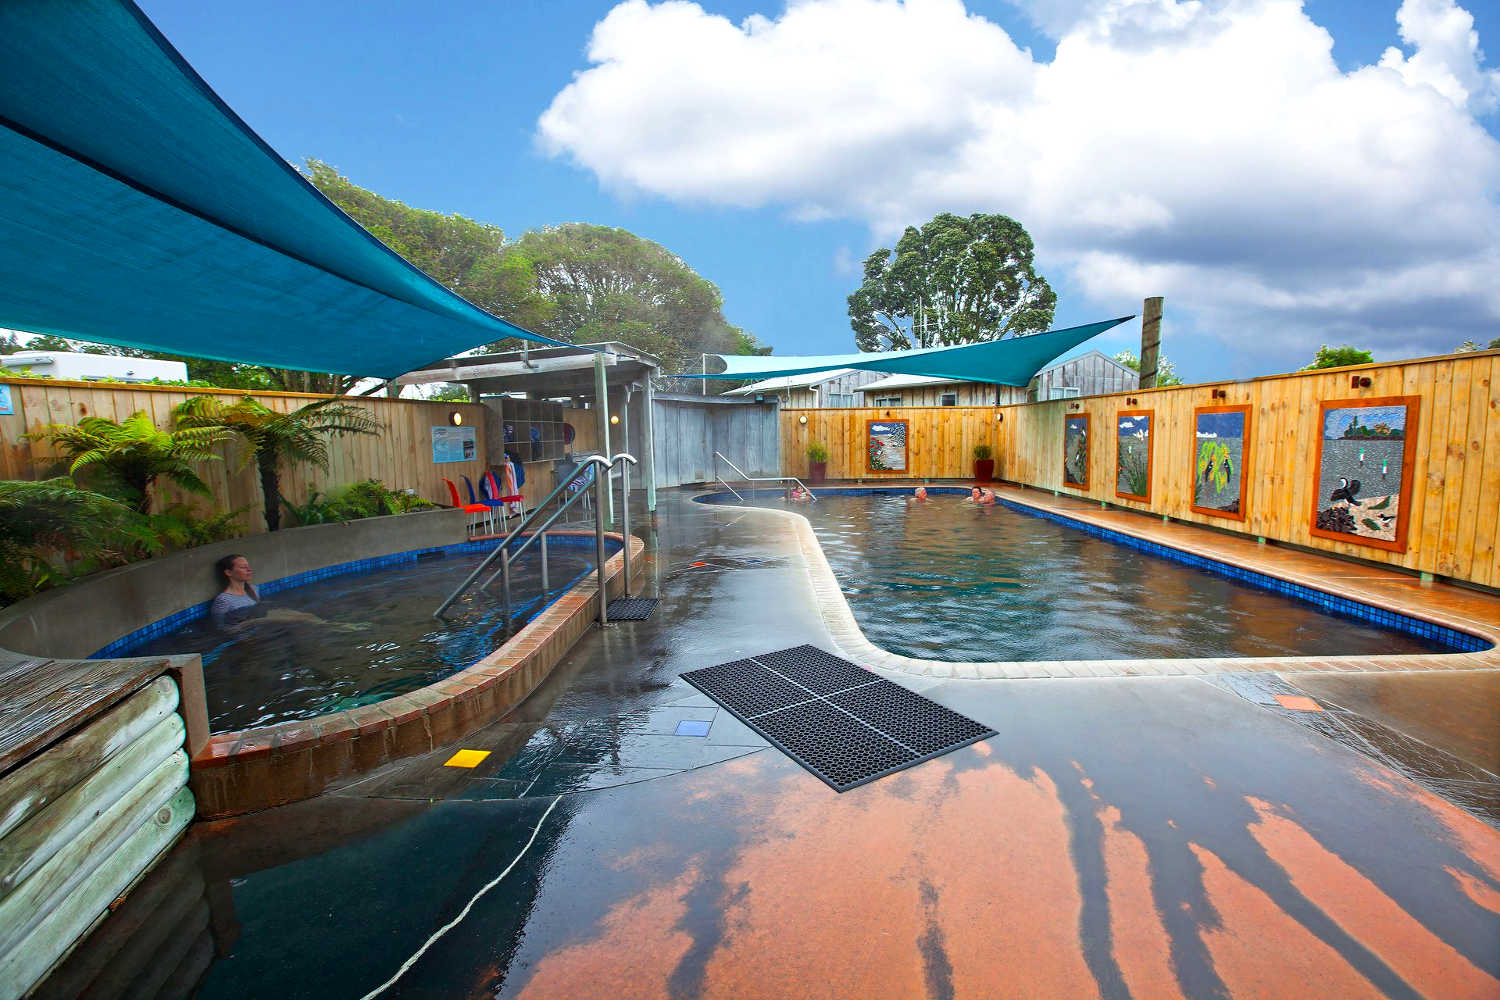 Anthenree Hot Pools, New Zealand @athenreehotsprings